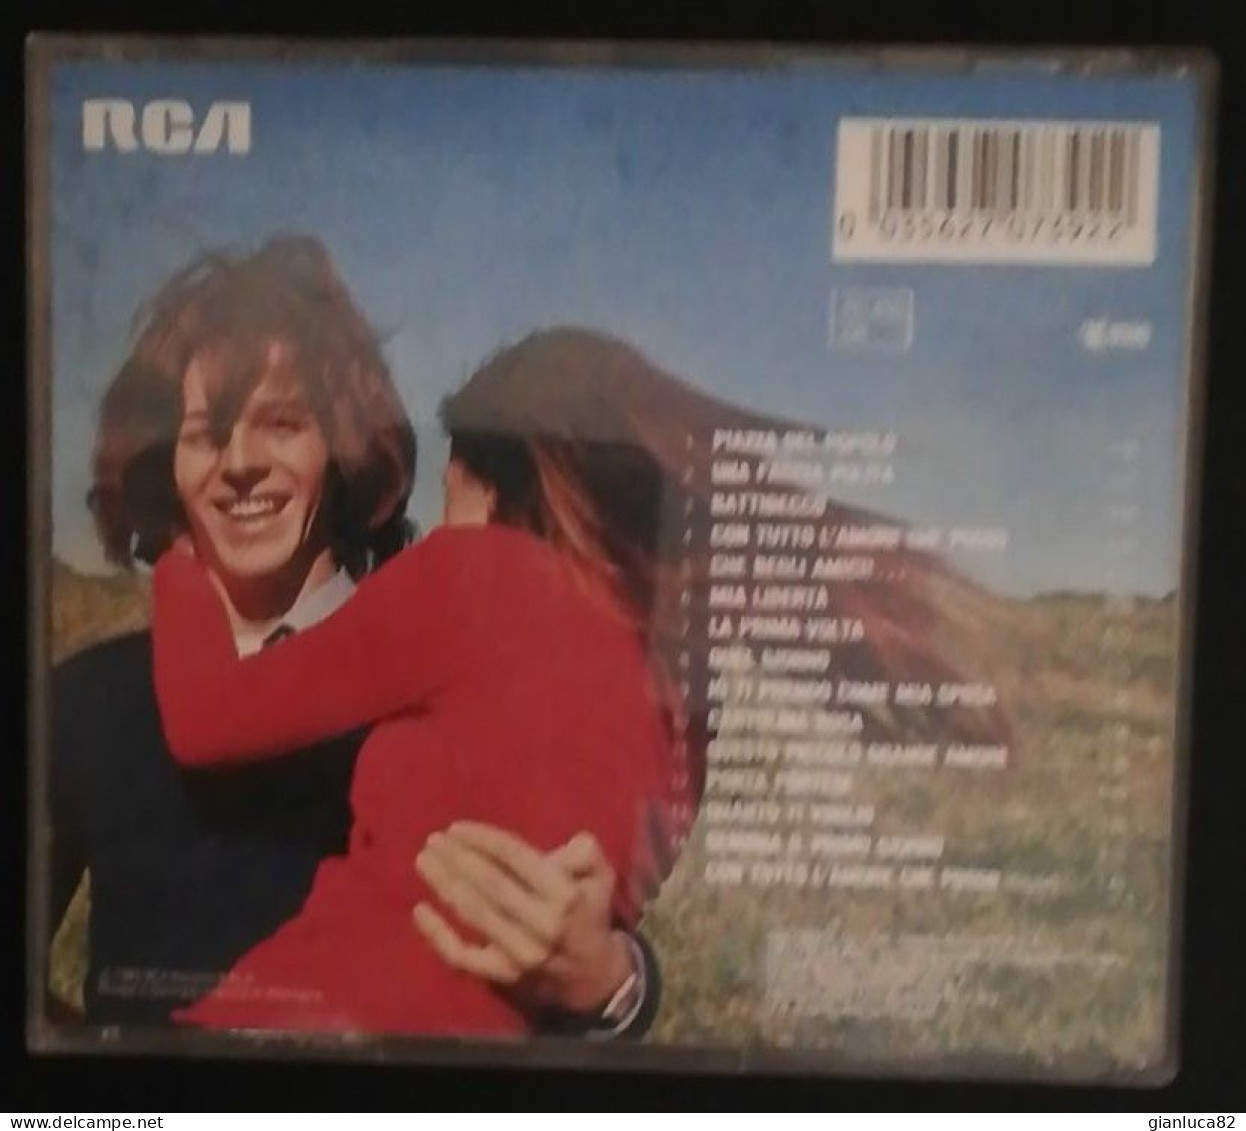 CD Claudio Baglioni Questo Piccolo Grande Amore RCA (CD3) Come Da Foto Ottime Condizioni RCA PD70739 - Other - Italian Music